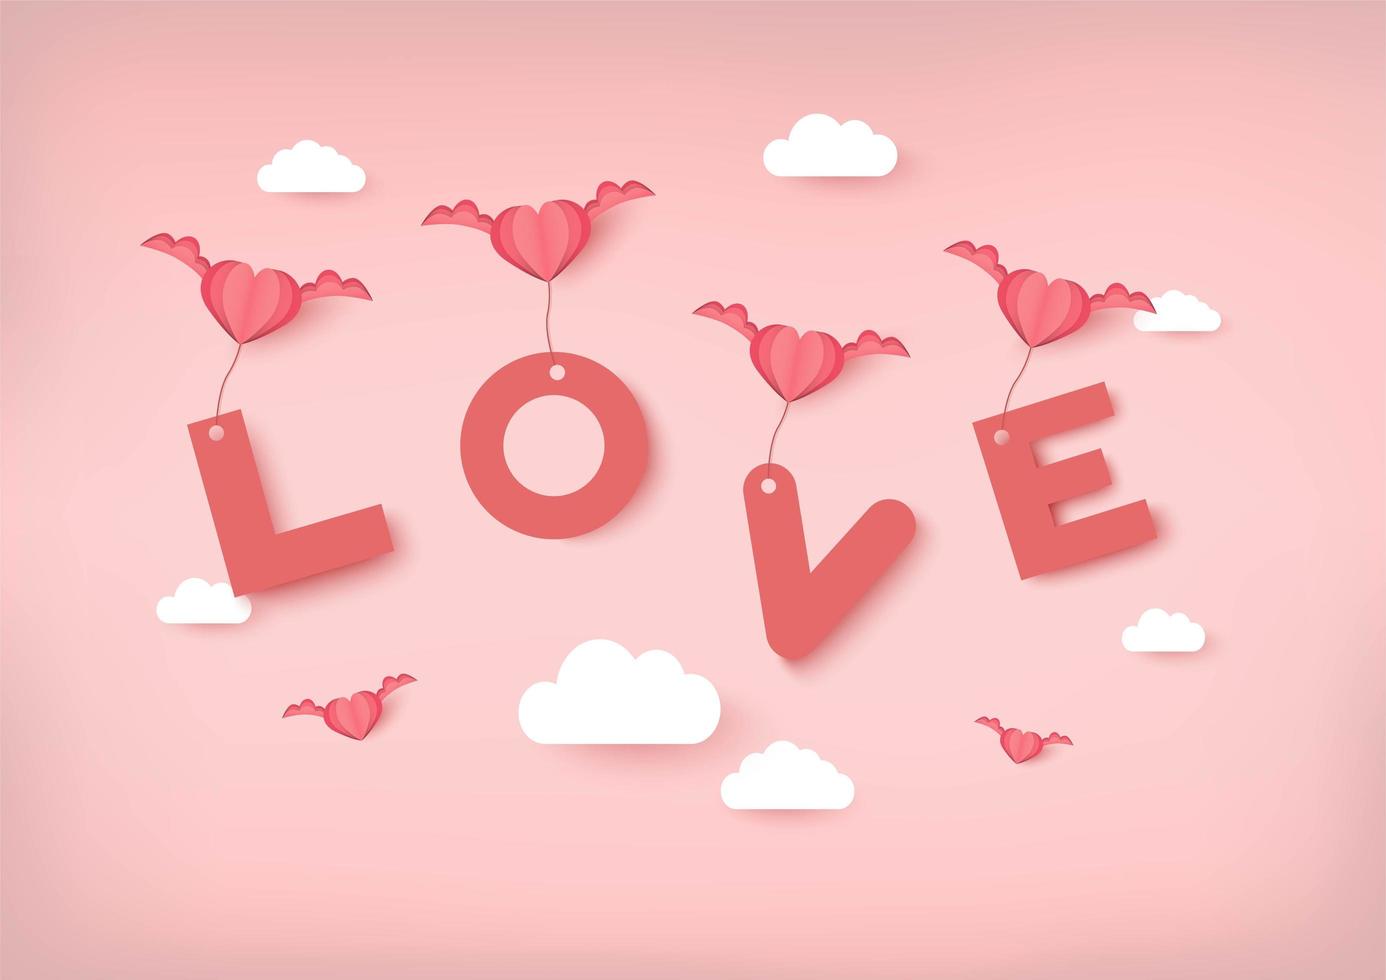 Dia dos namorados de fundo vector com corações rosa, carregando o texto de amor